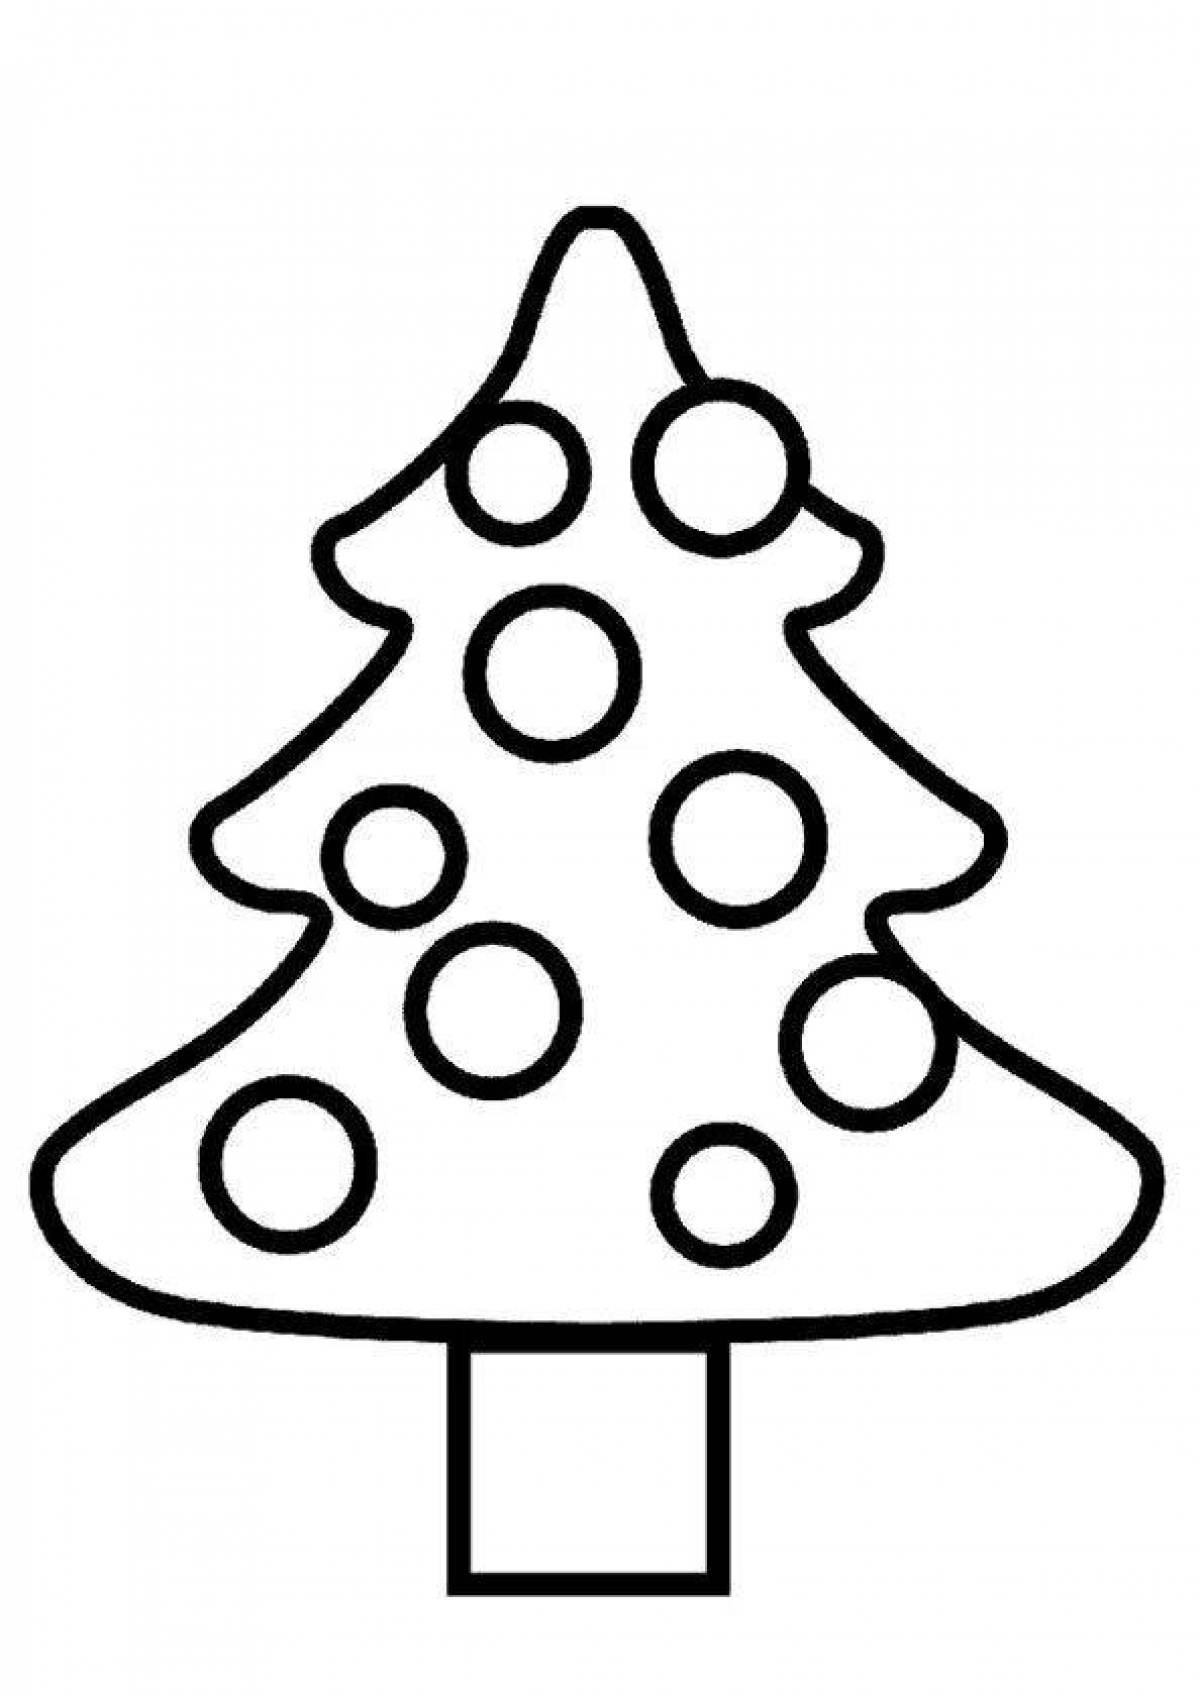 Christmas tree with balls #4